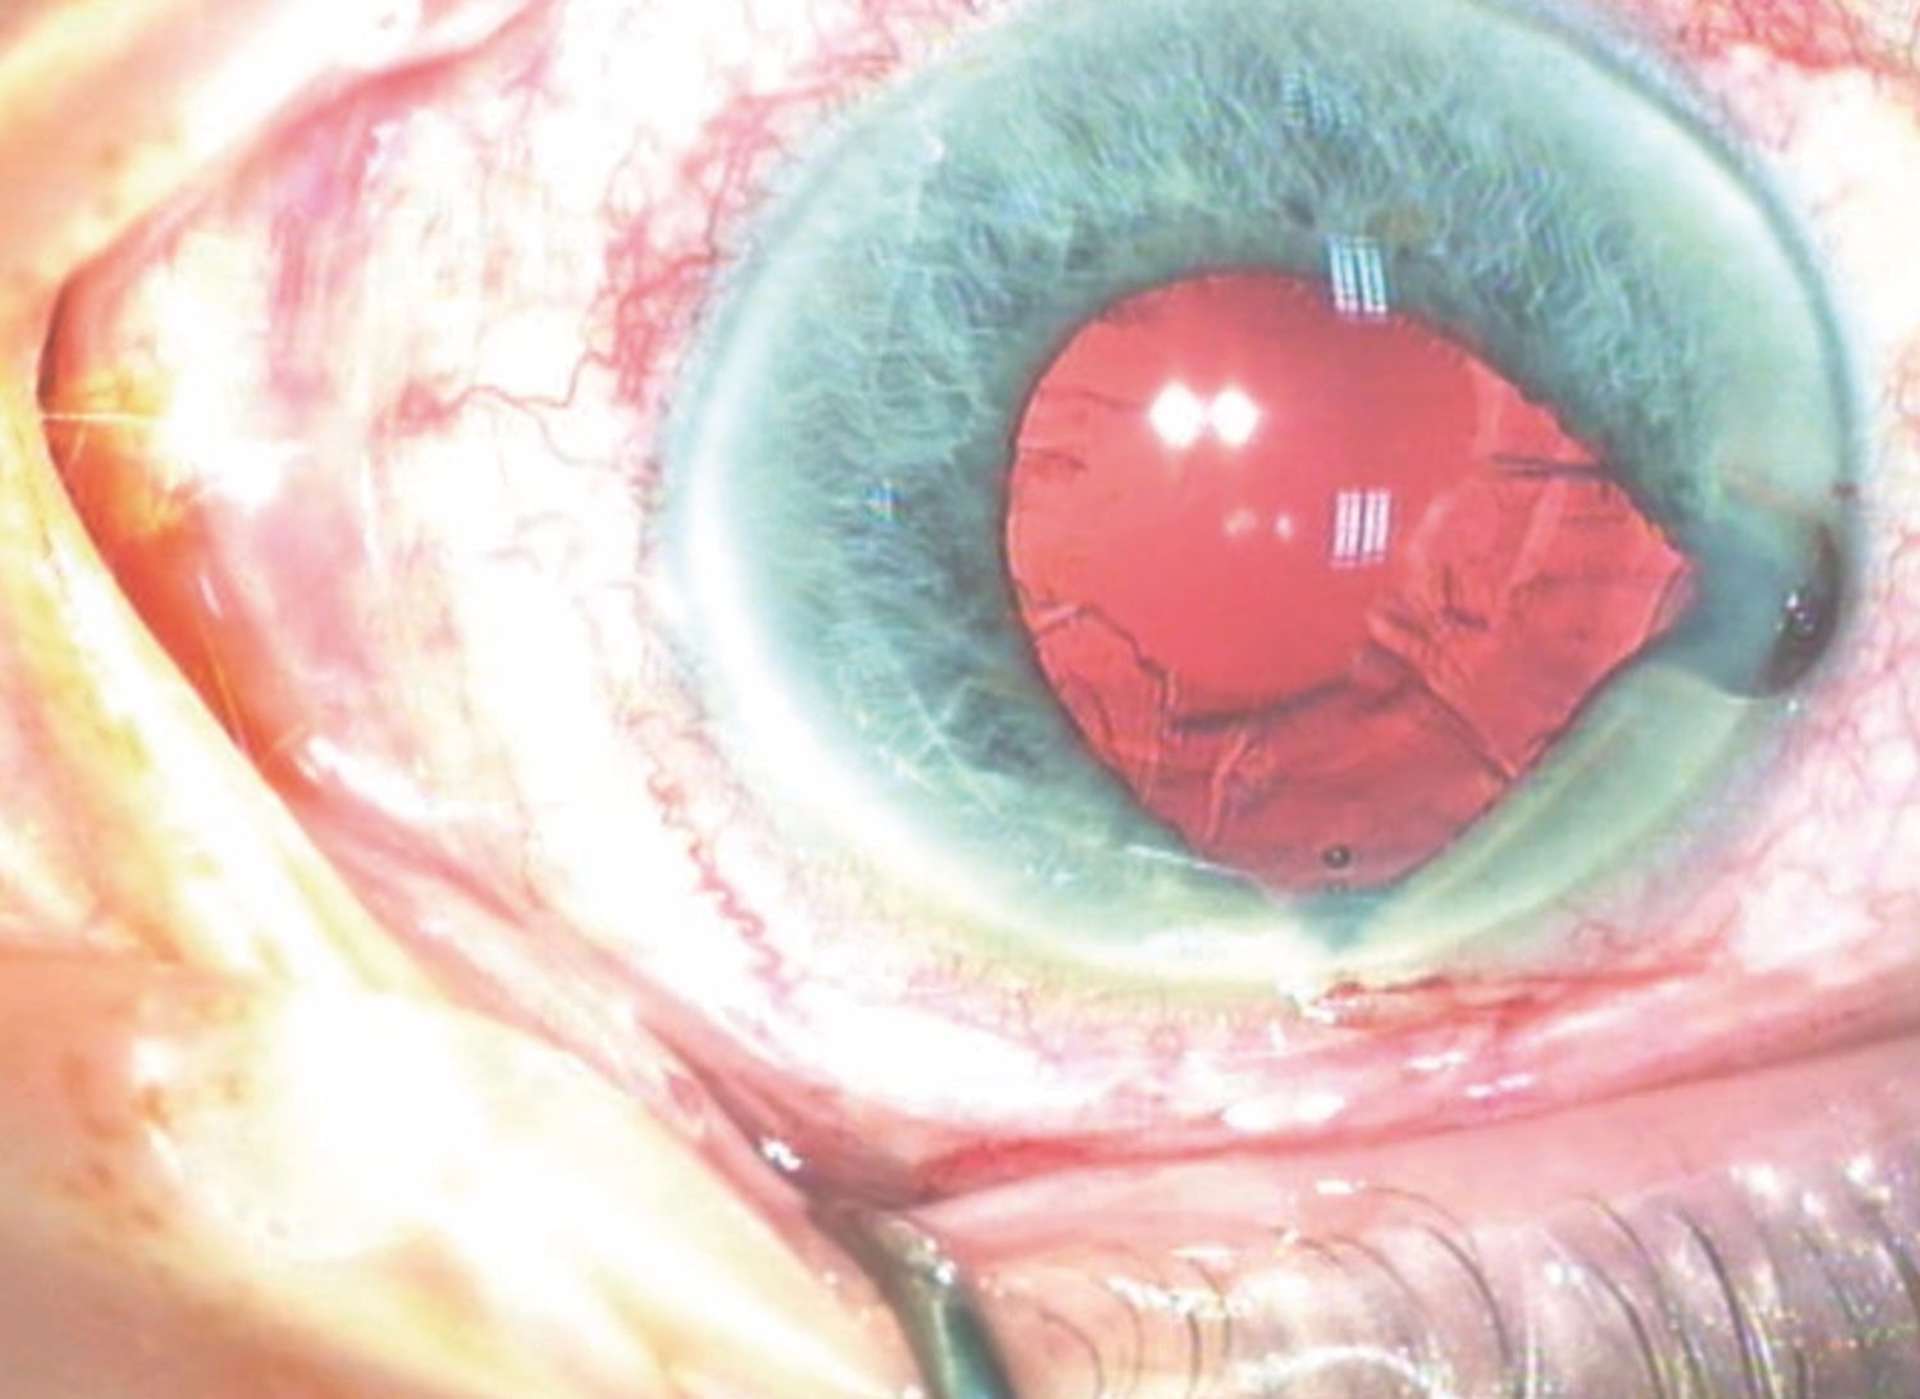 IFIS grade 3 (sévère) associant une flaccidité du bord pupillaire, une constriction irienne et un prolapsus avec une éversion de l’iris au travers des incisions cornéennes.
